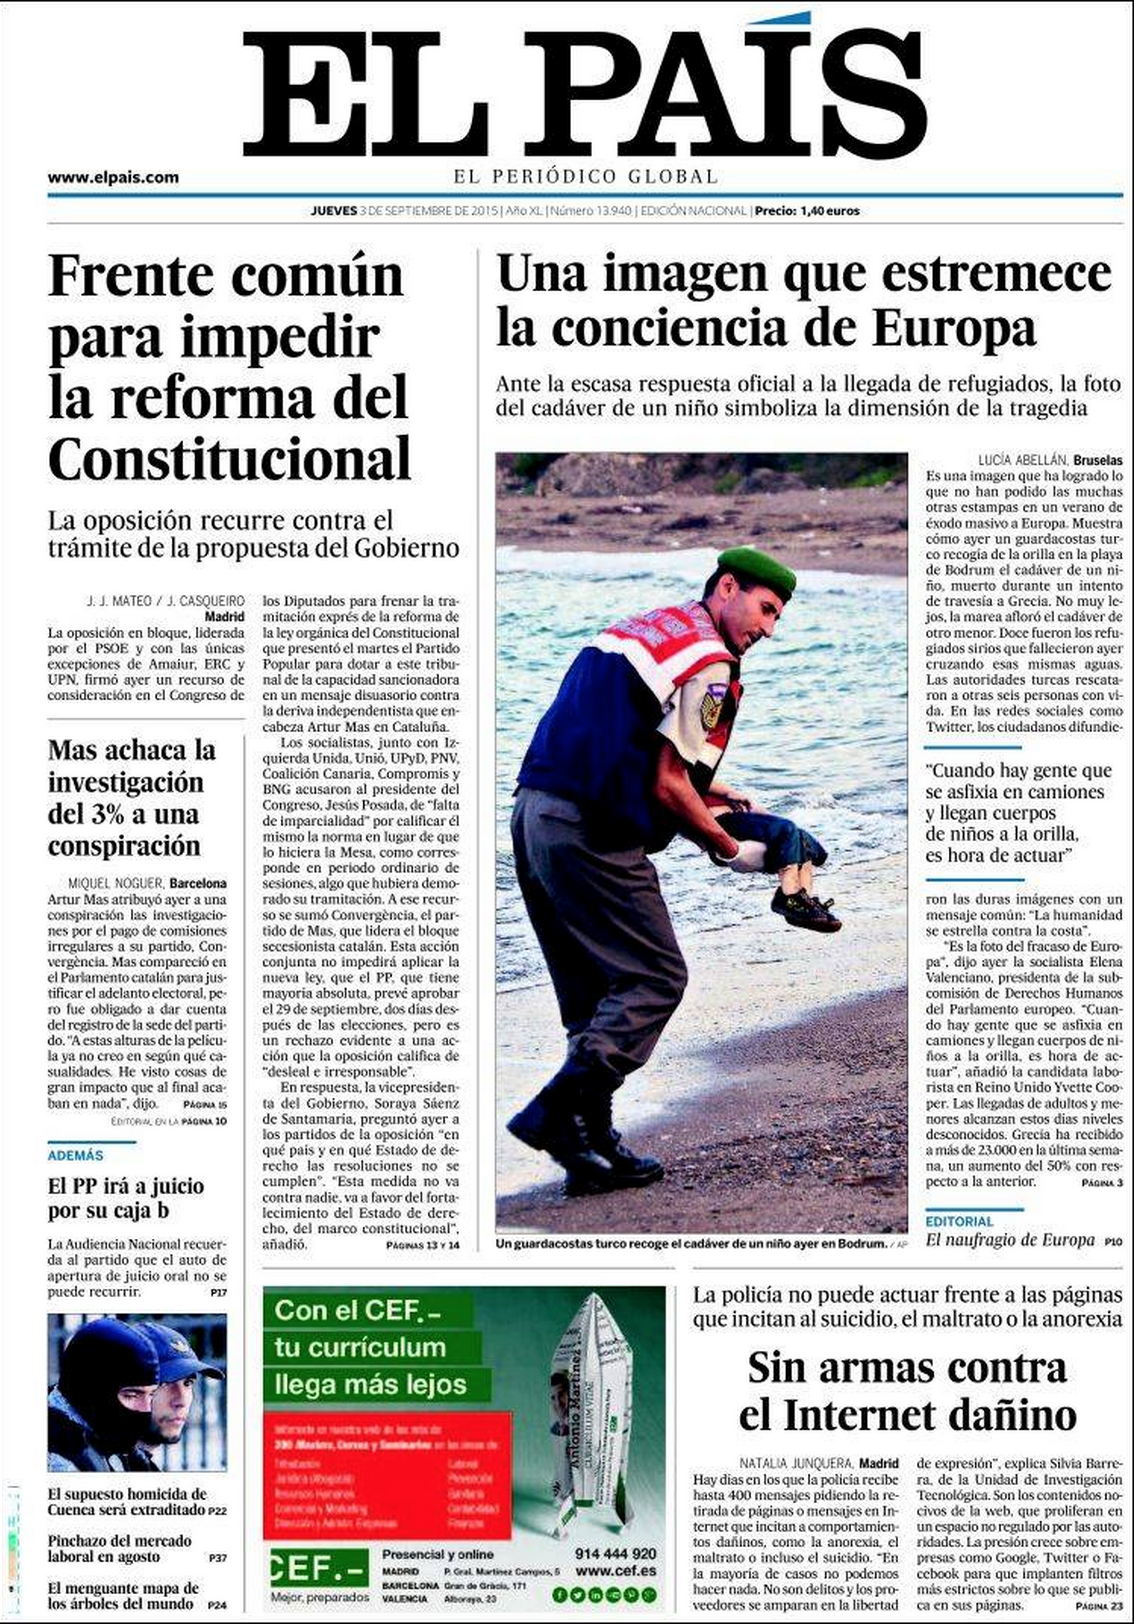 Drowned Migrant Boy El Pais Front Page